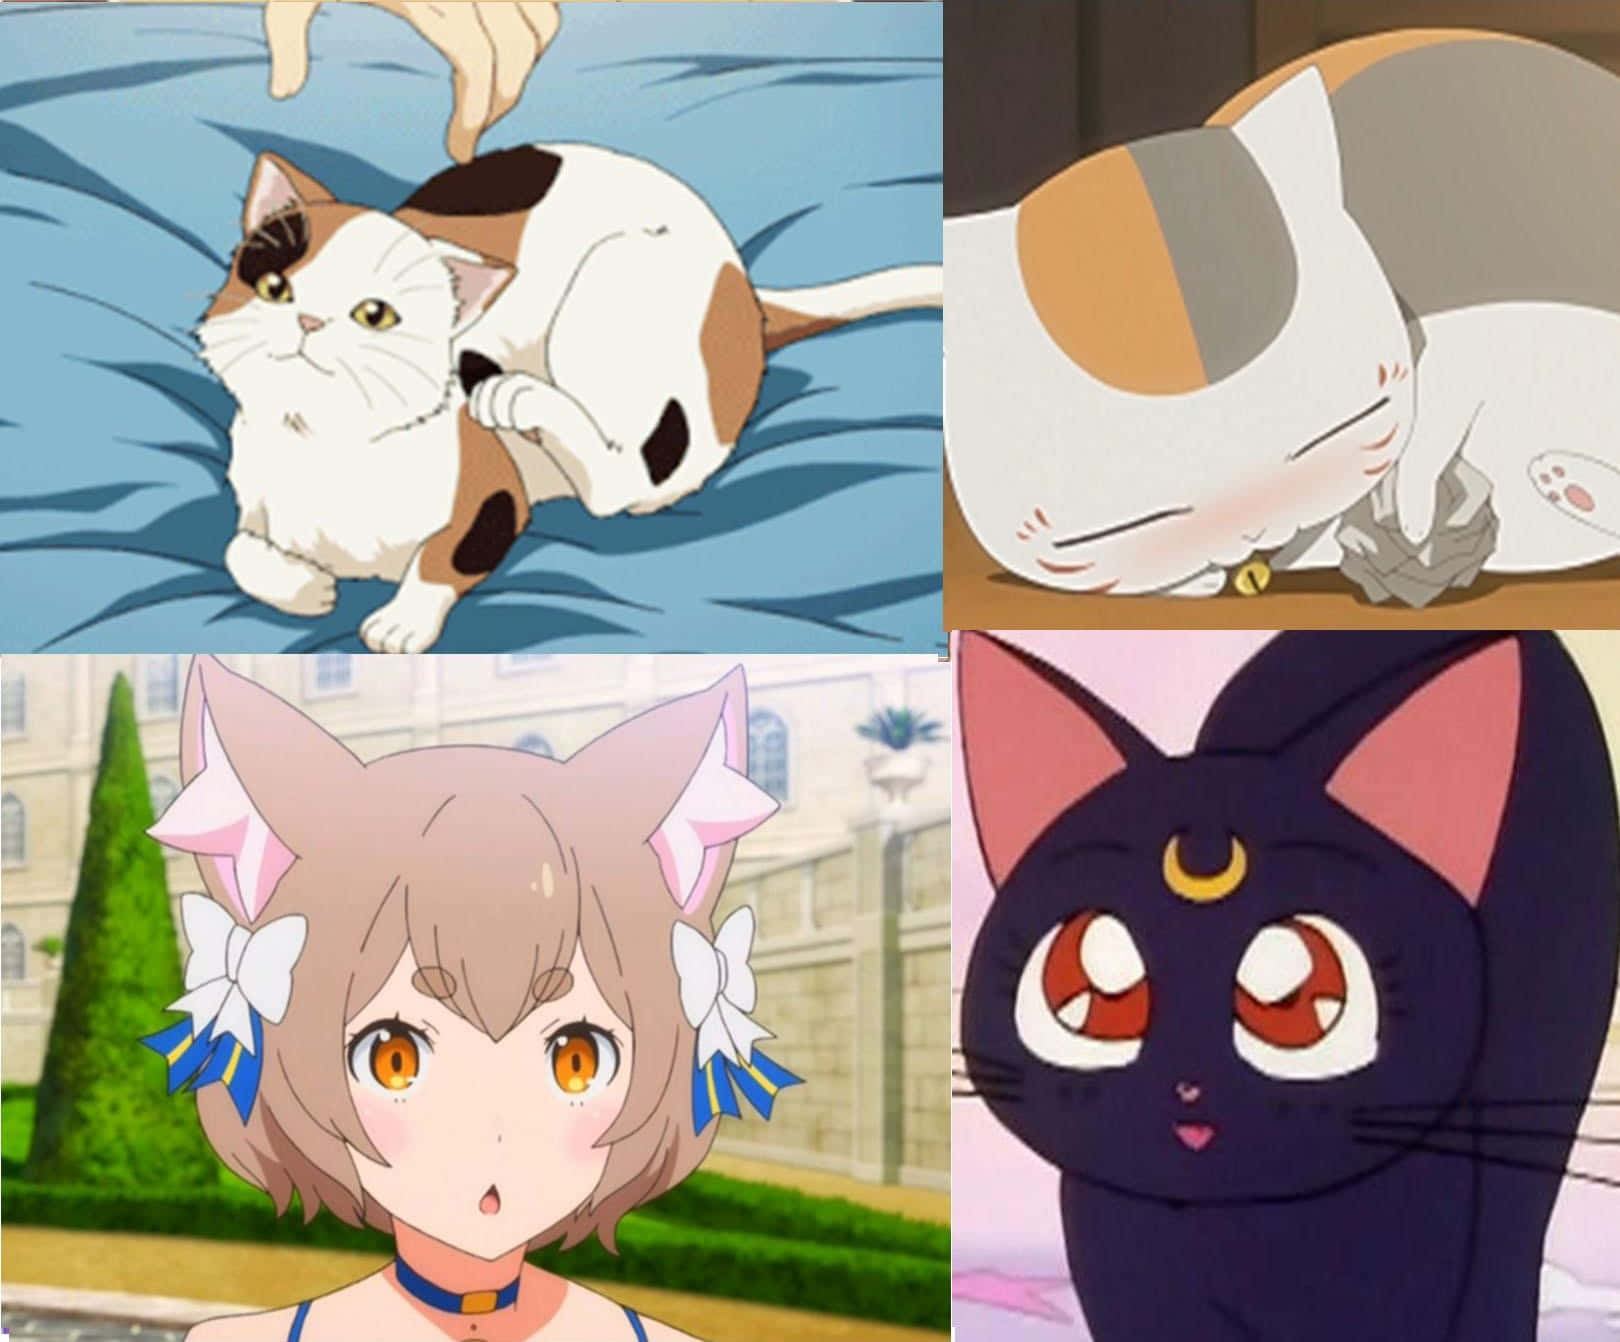 Uncollage De Gatos De Anime Con Diferentes Rostros